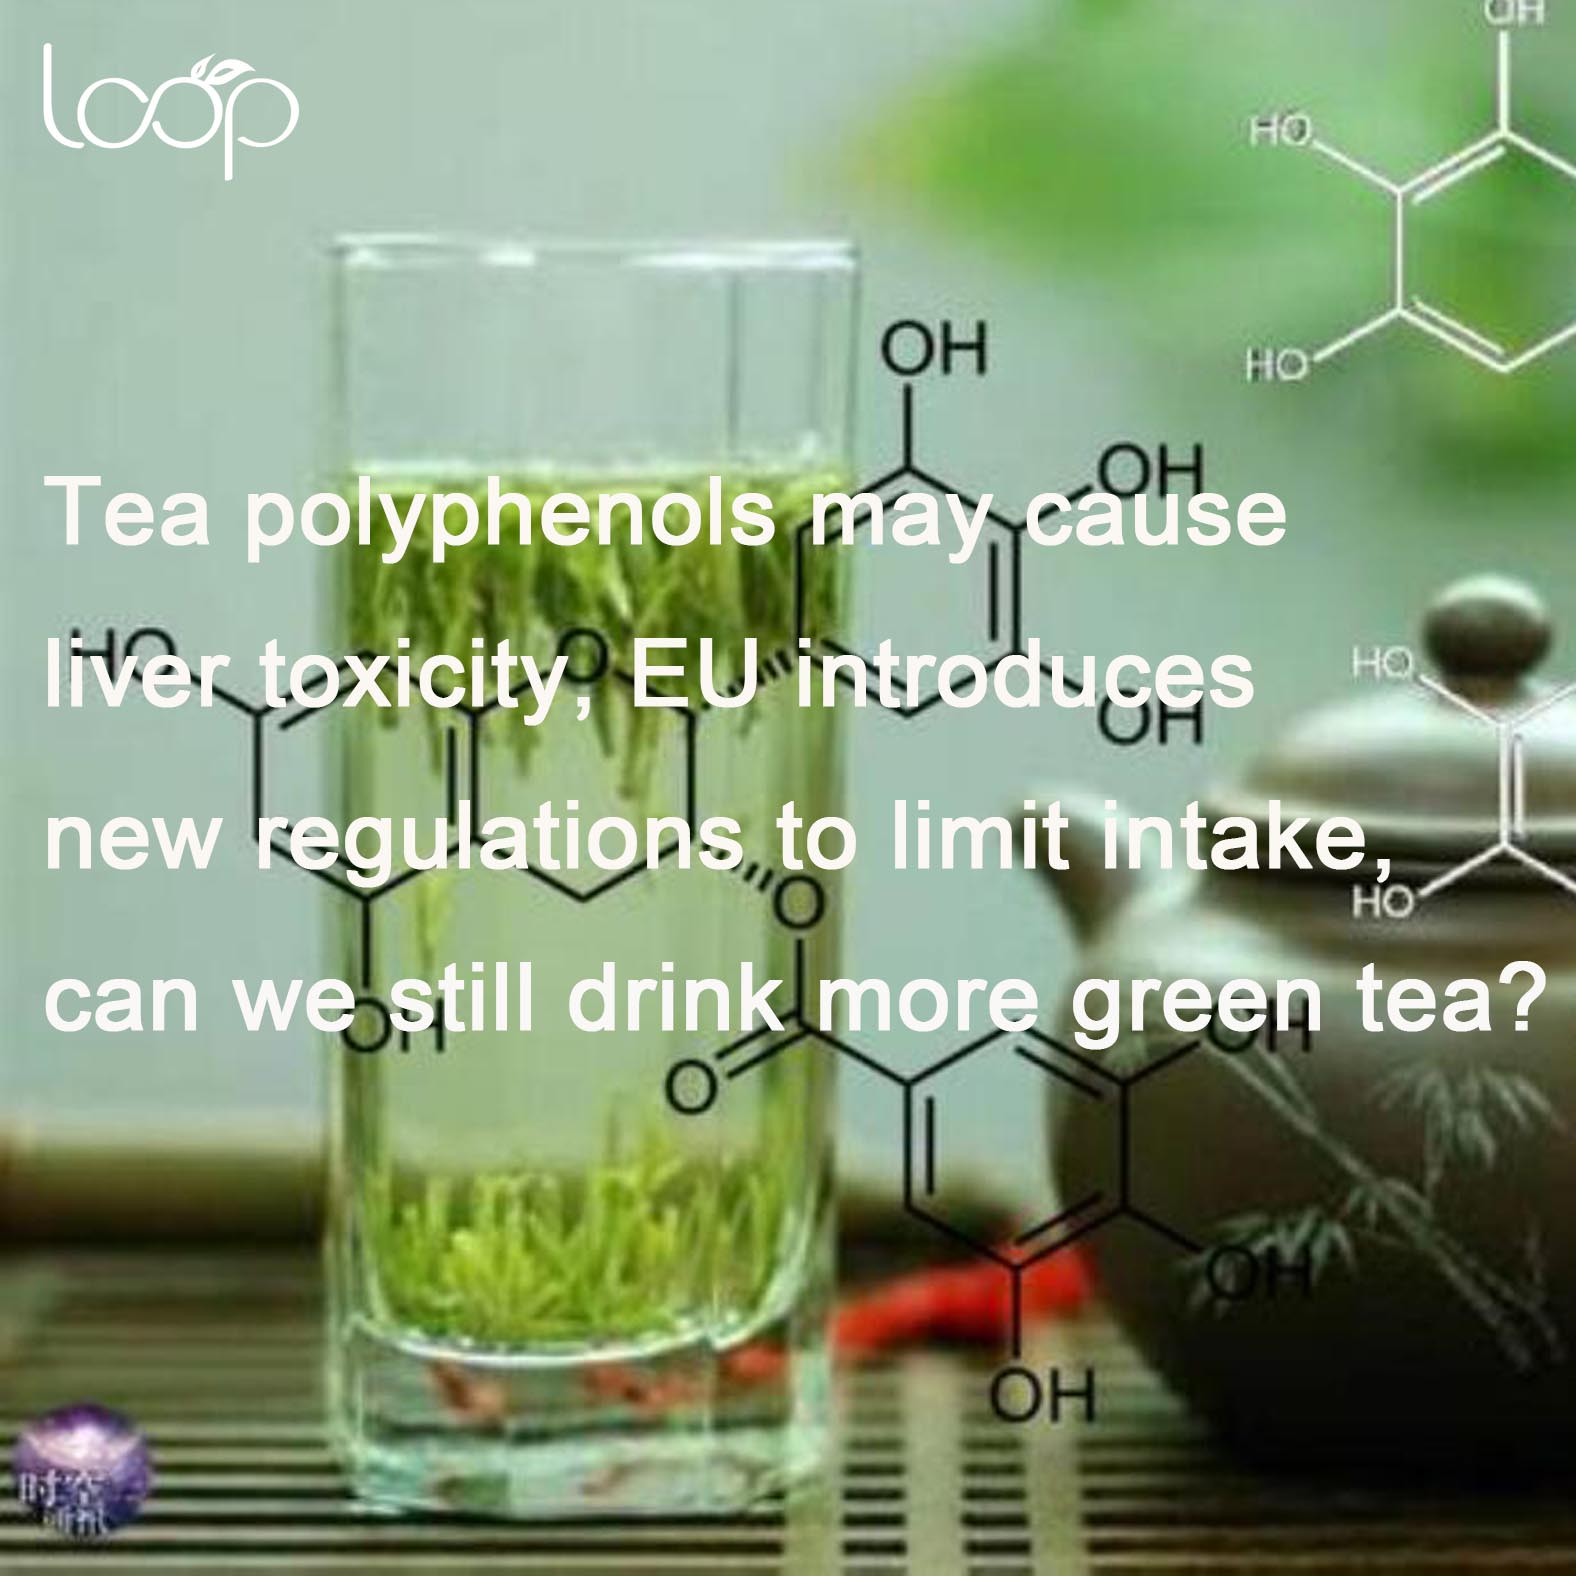 Polifenole w herbacie mogą powodować toksyczność dla wątroby, UE wprowadza nowe przepisy ograniczające spożycie, czy nadal możemy pić więcej zielonej herbaty?